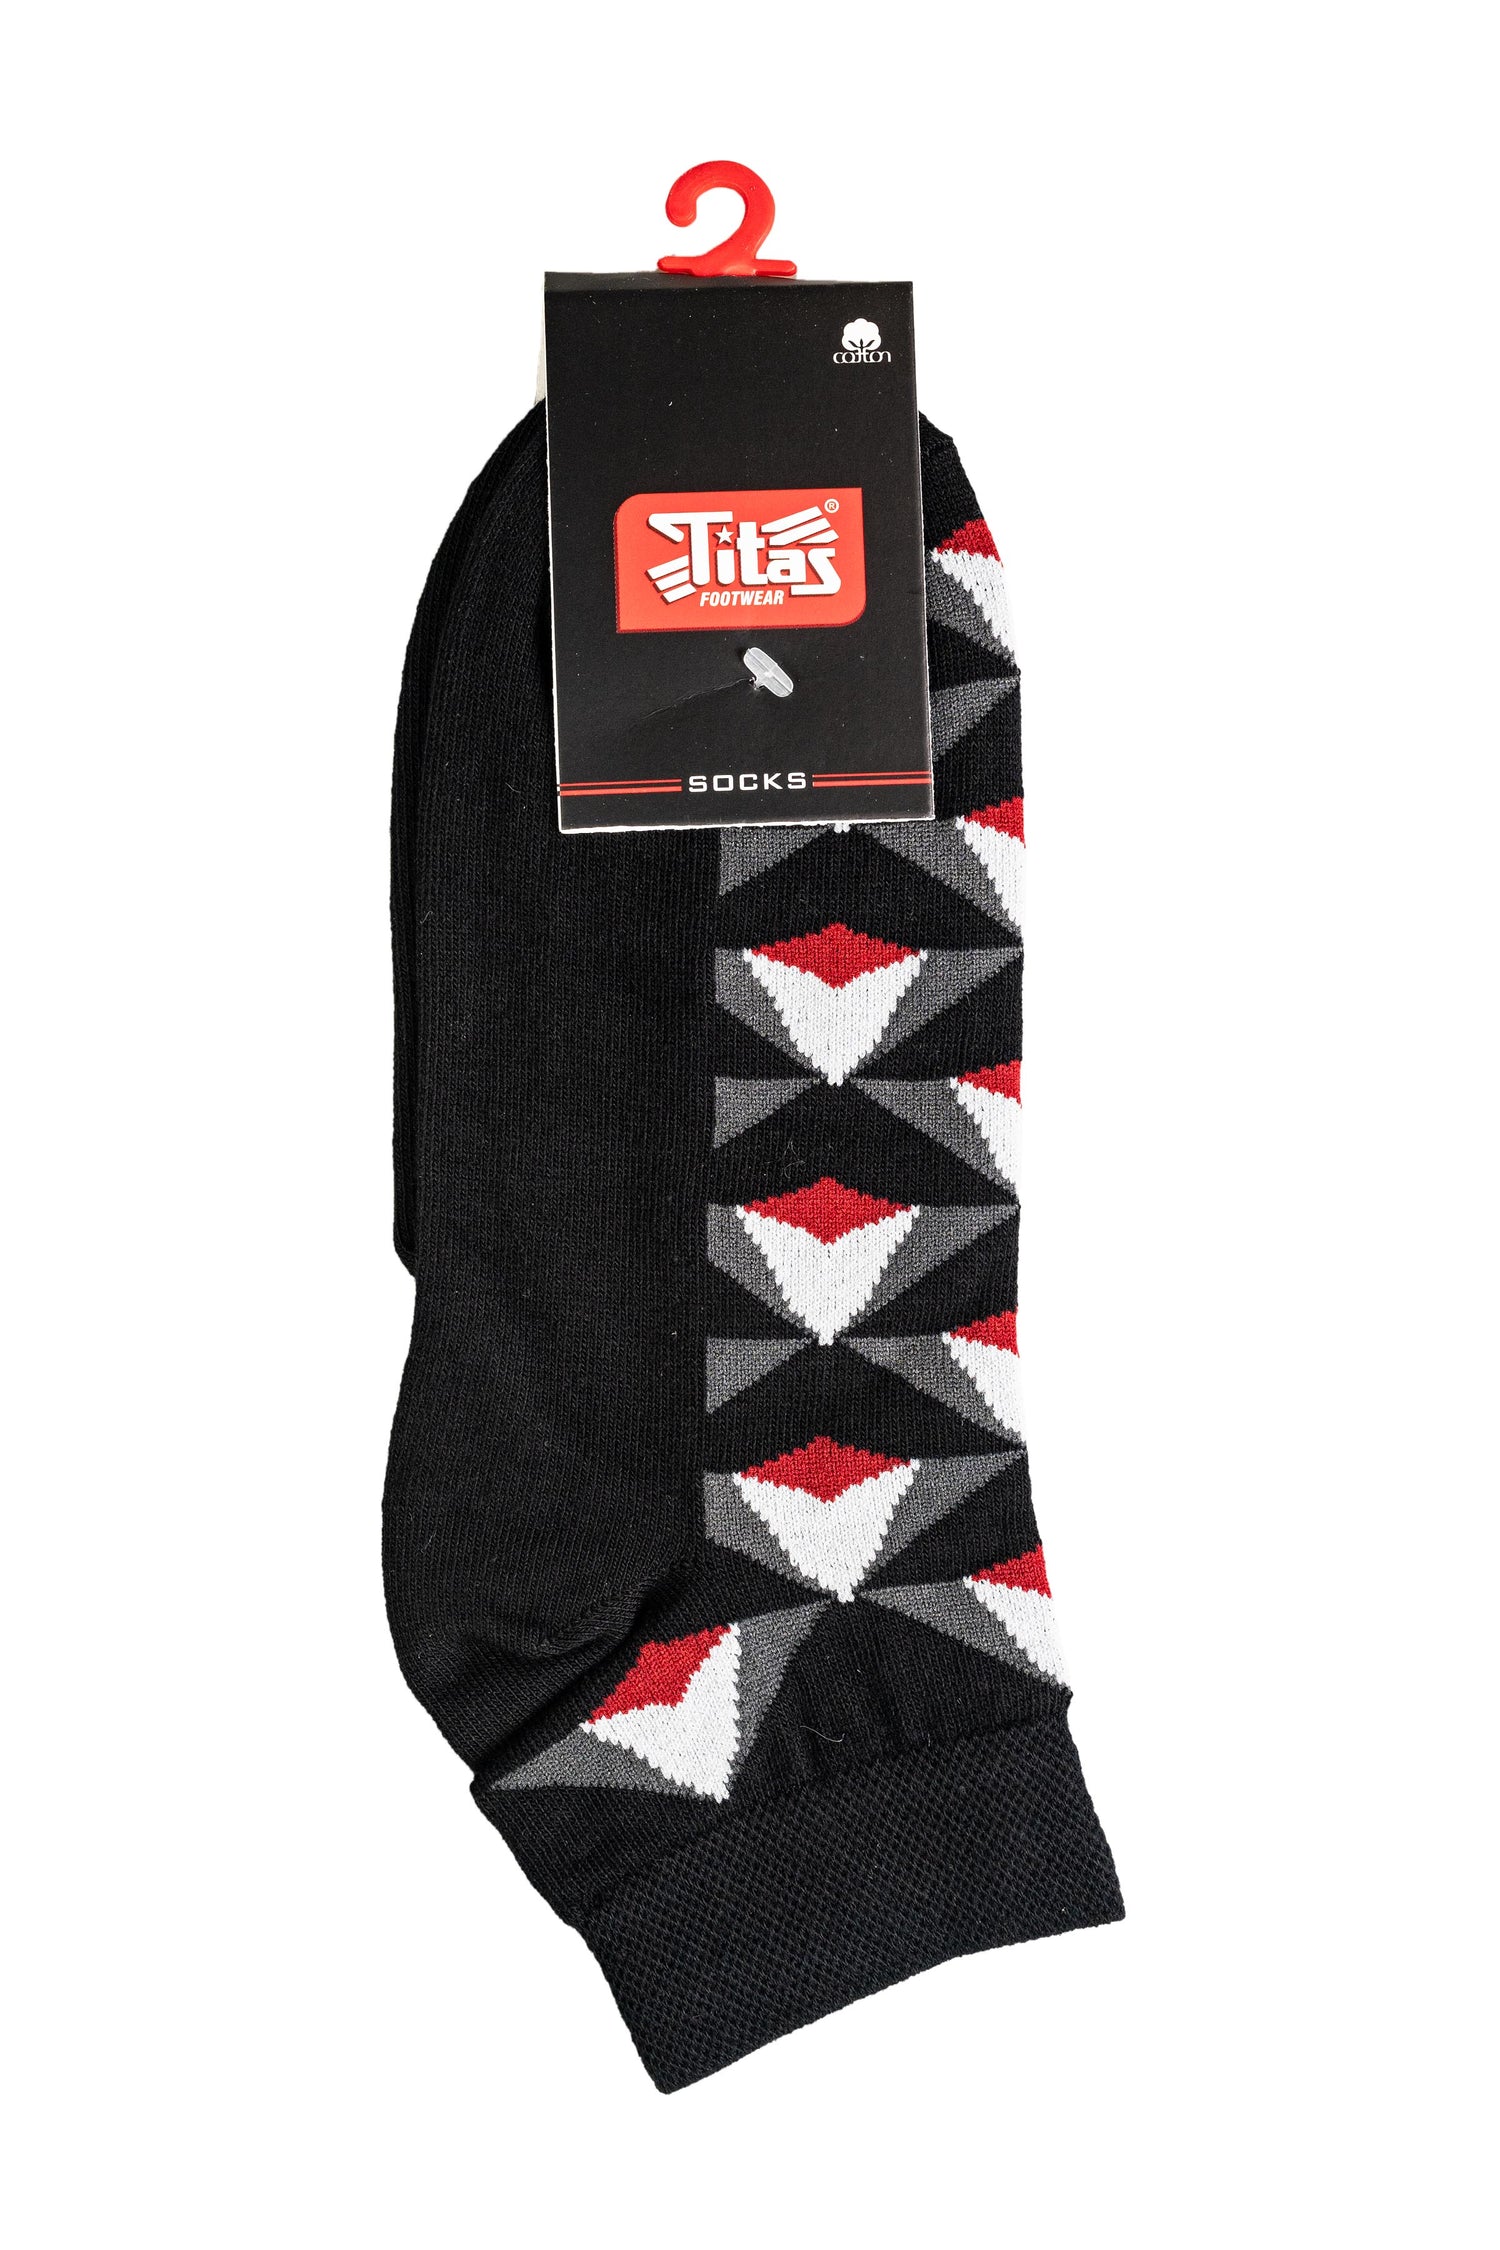 Titas Gents Comfort Blend Assorted Ankle Length Socks